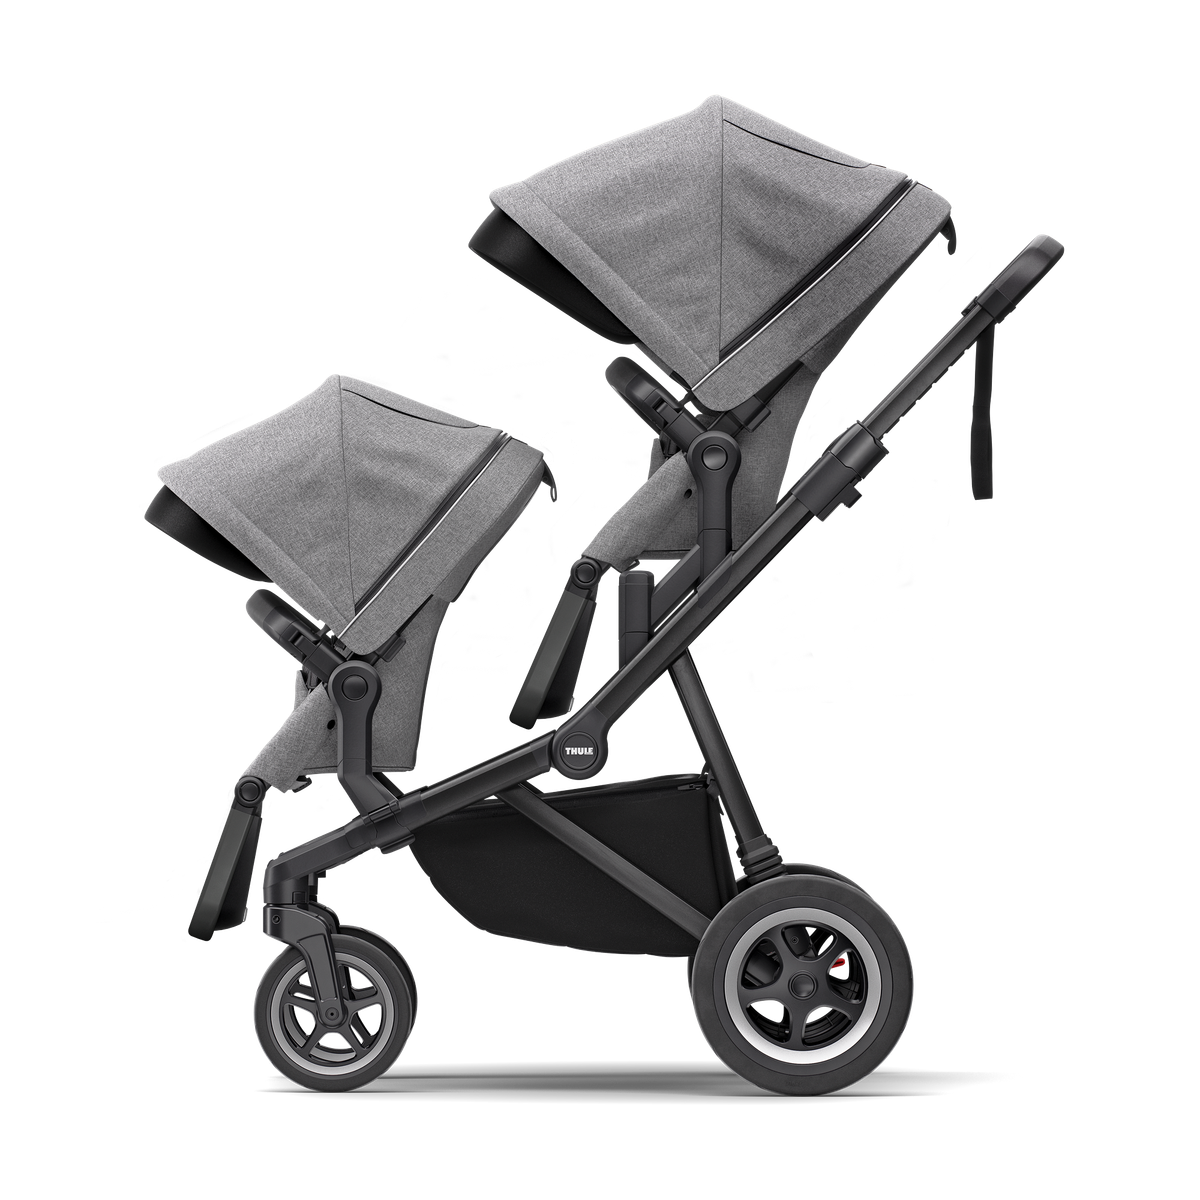 Thule Sleek city stroller gray melange on black with bassinet gray melange